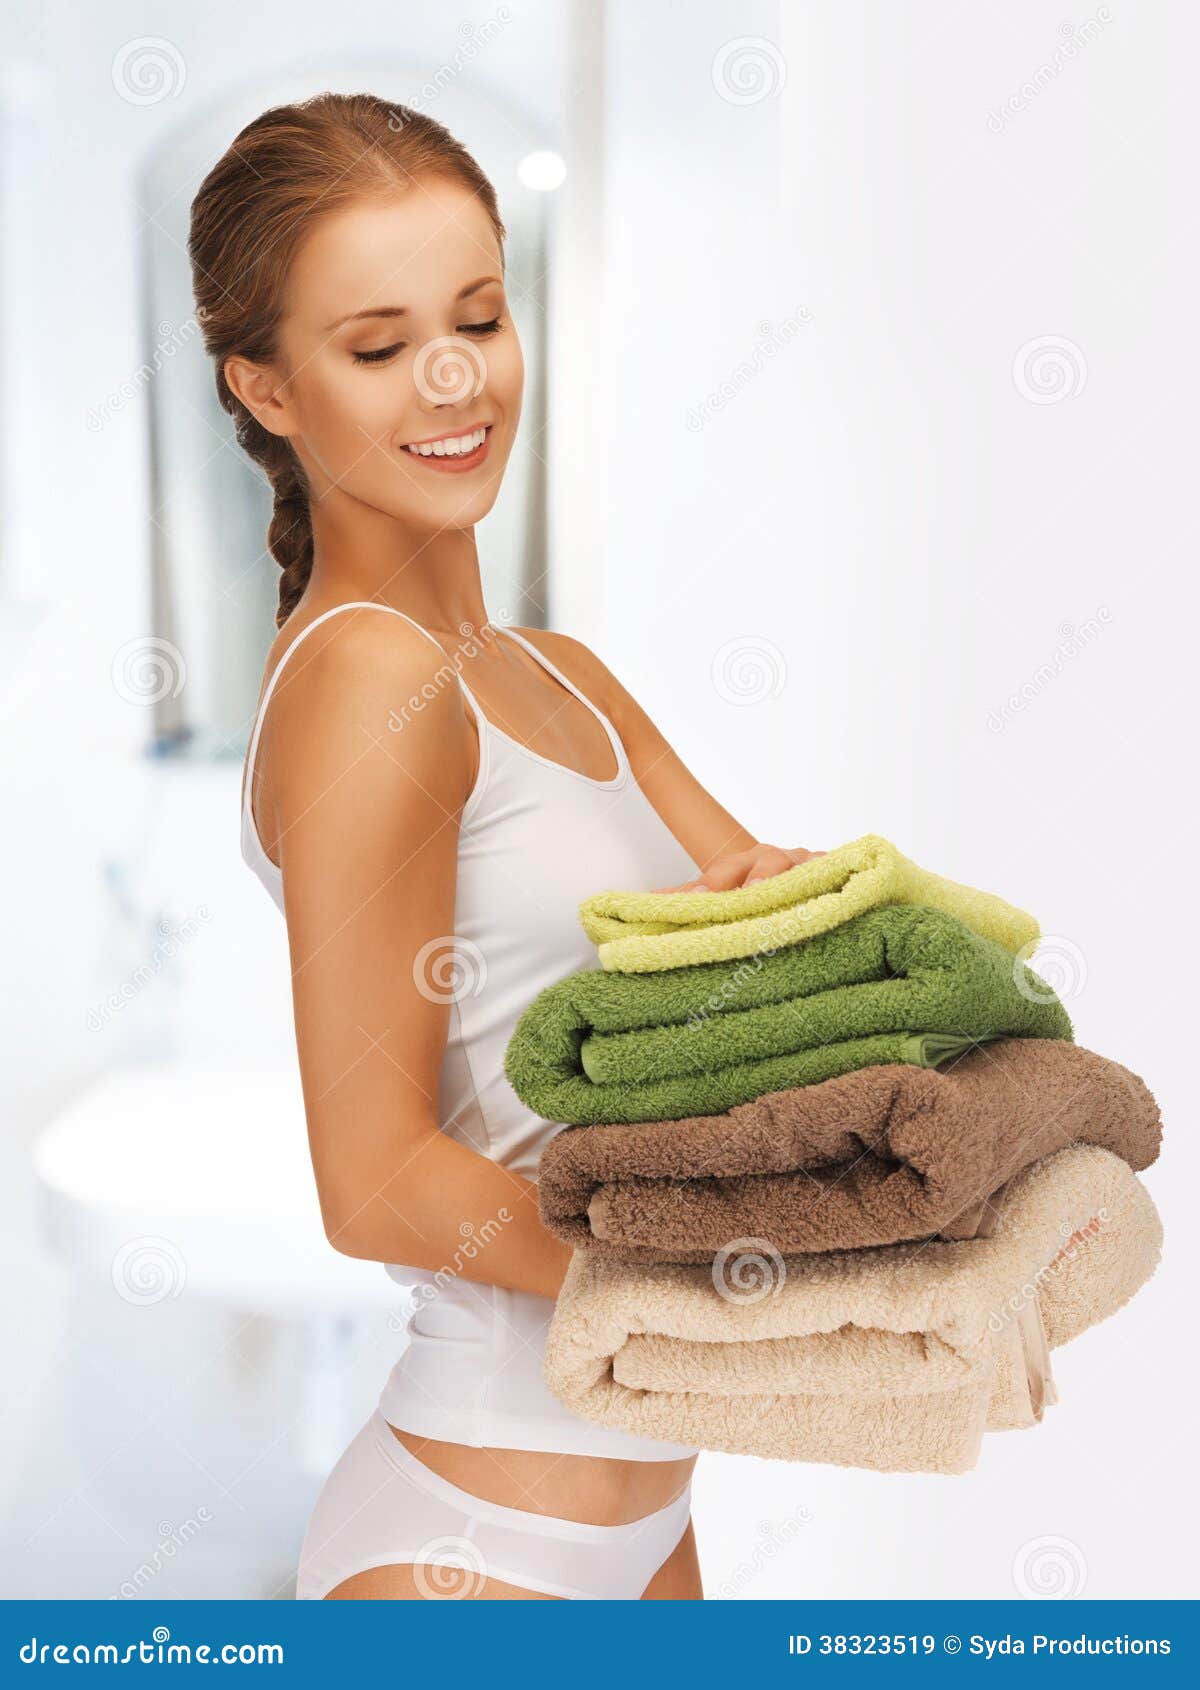 Попросила принести полотенце